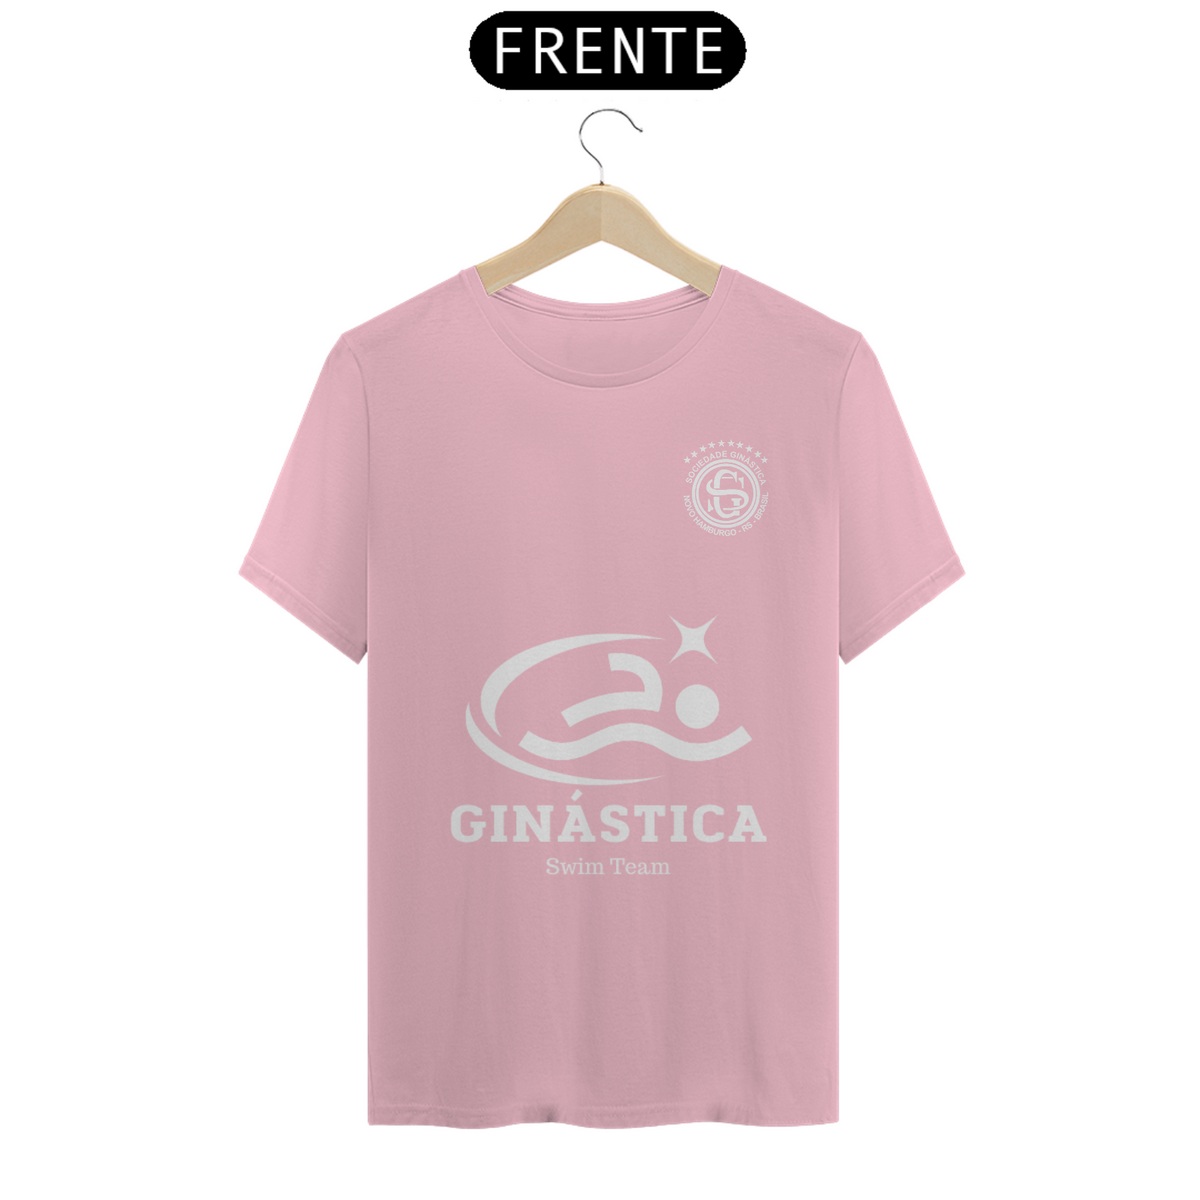 Nome do produto: Camiseta Ginástica Swim Team Cores